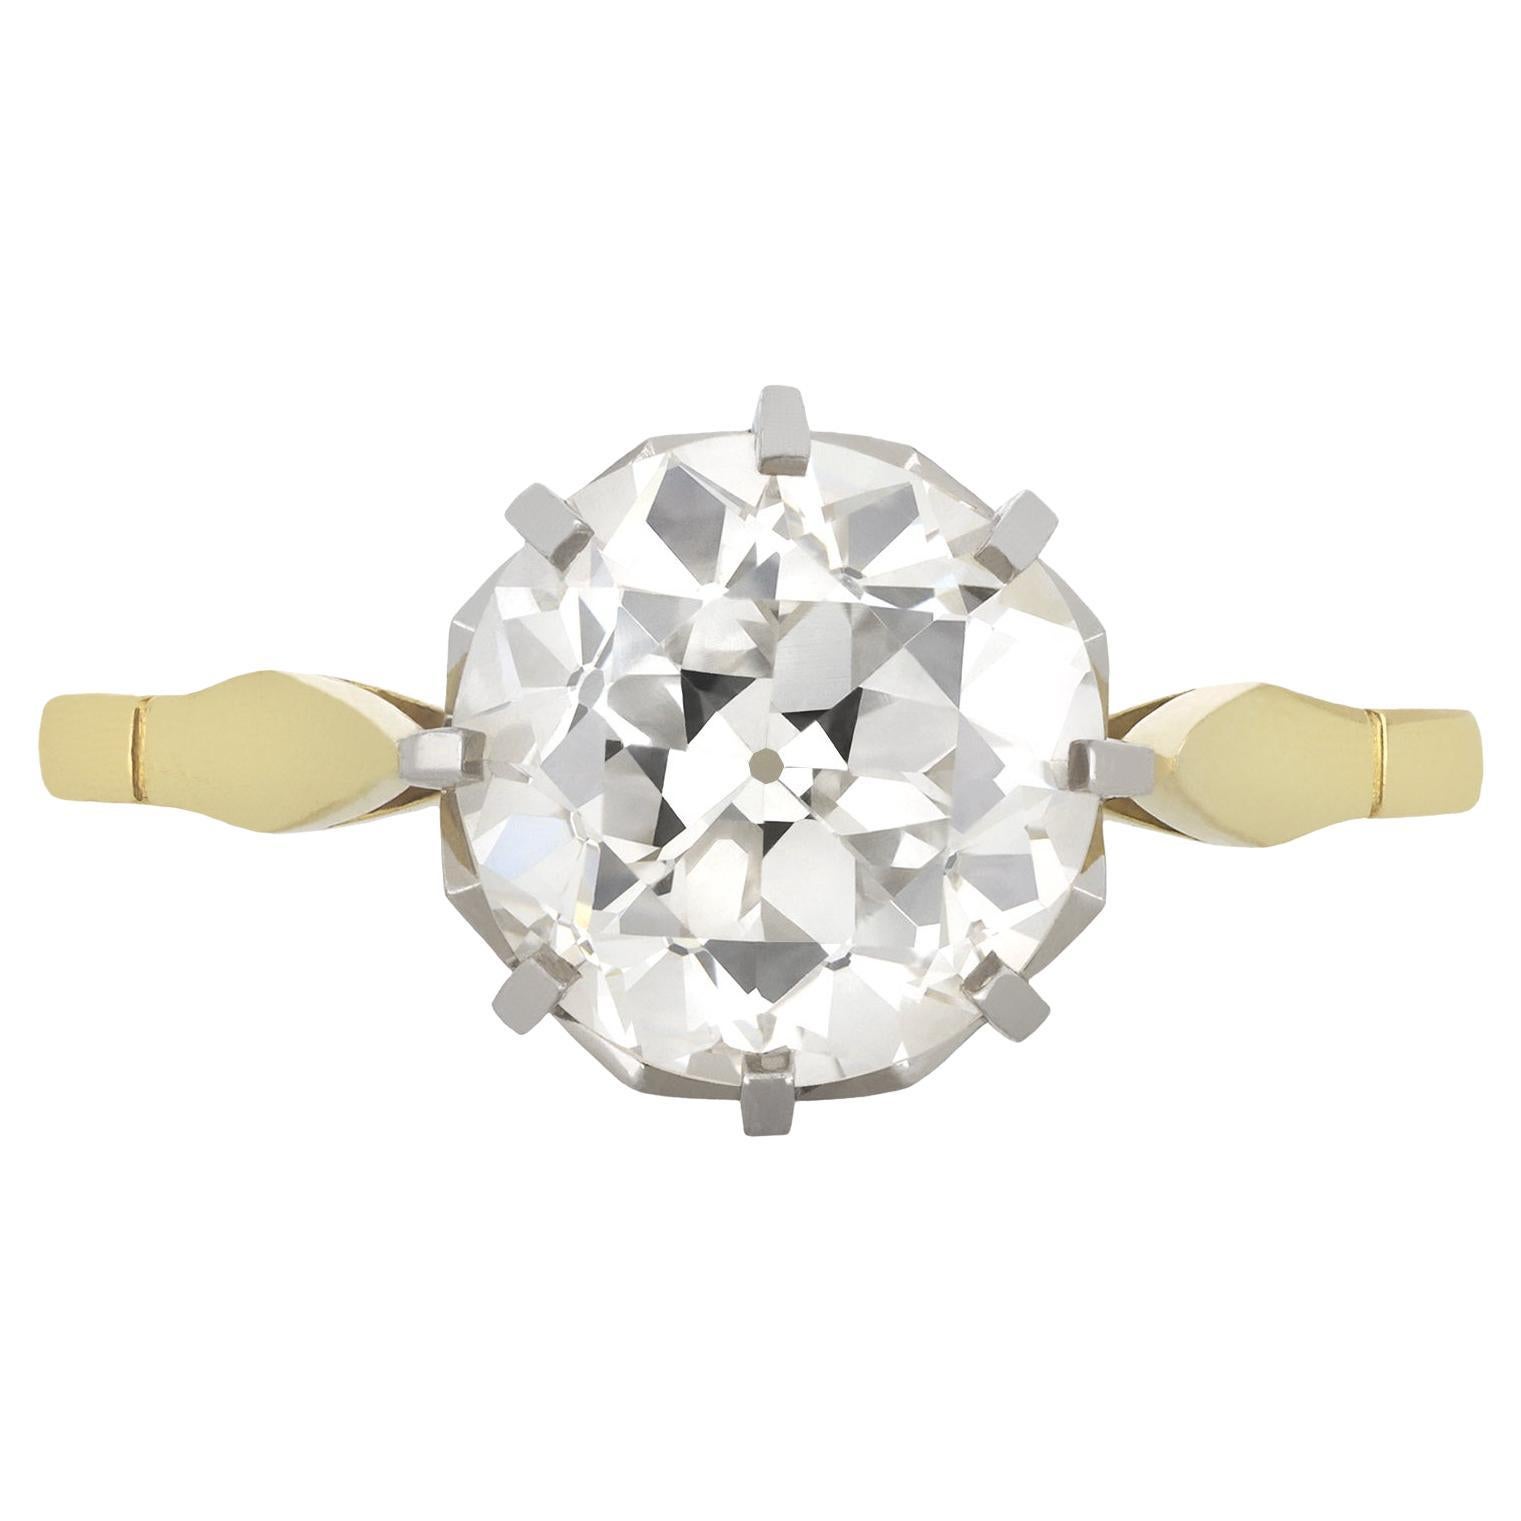 Antique 2.54 carat diamond engagement ring, circa 1915.